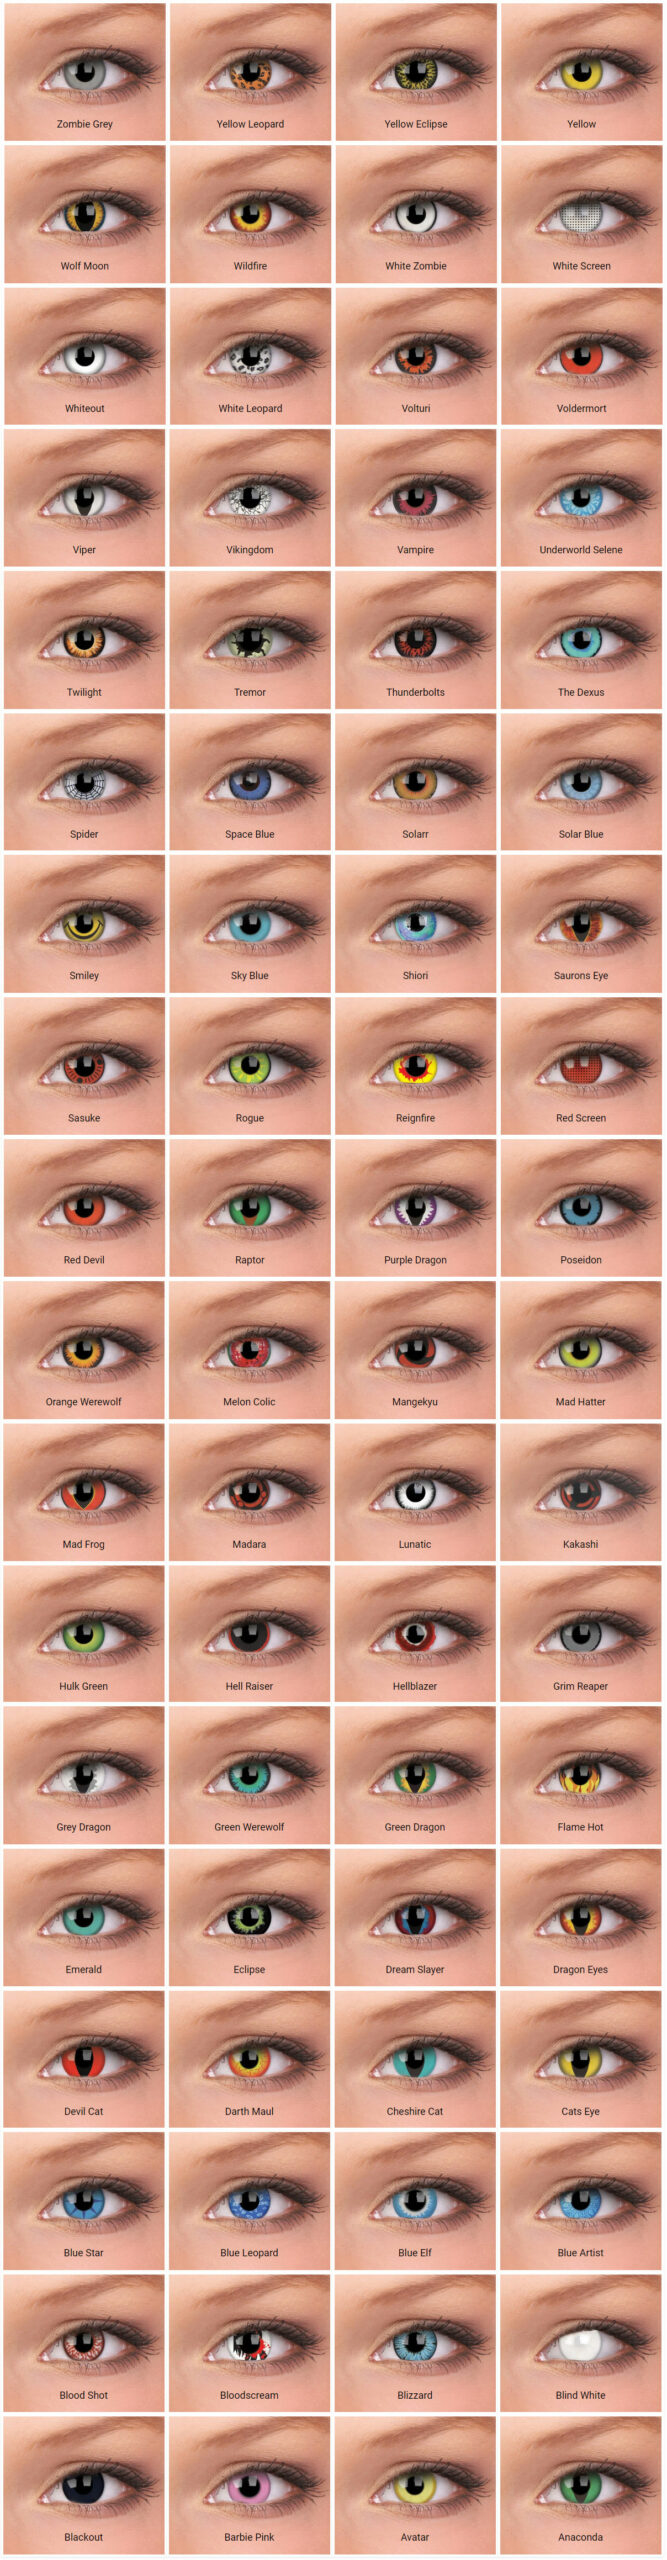 ColourVUE Crazy -piilolinssit on saatavilla kymmenissä eri 
väreissä ja kuoseissa, jotka muuttavat silmiesi ulkonäön täydellisesti ja dramaattisesti.